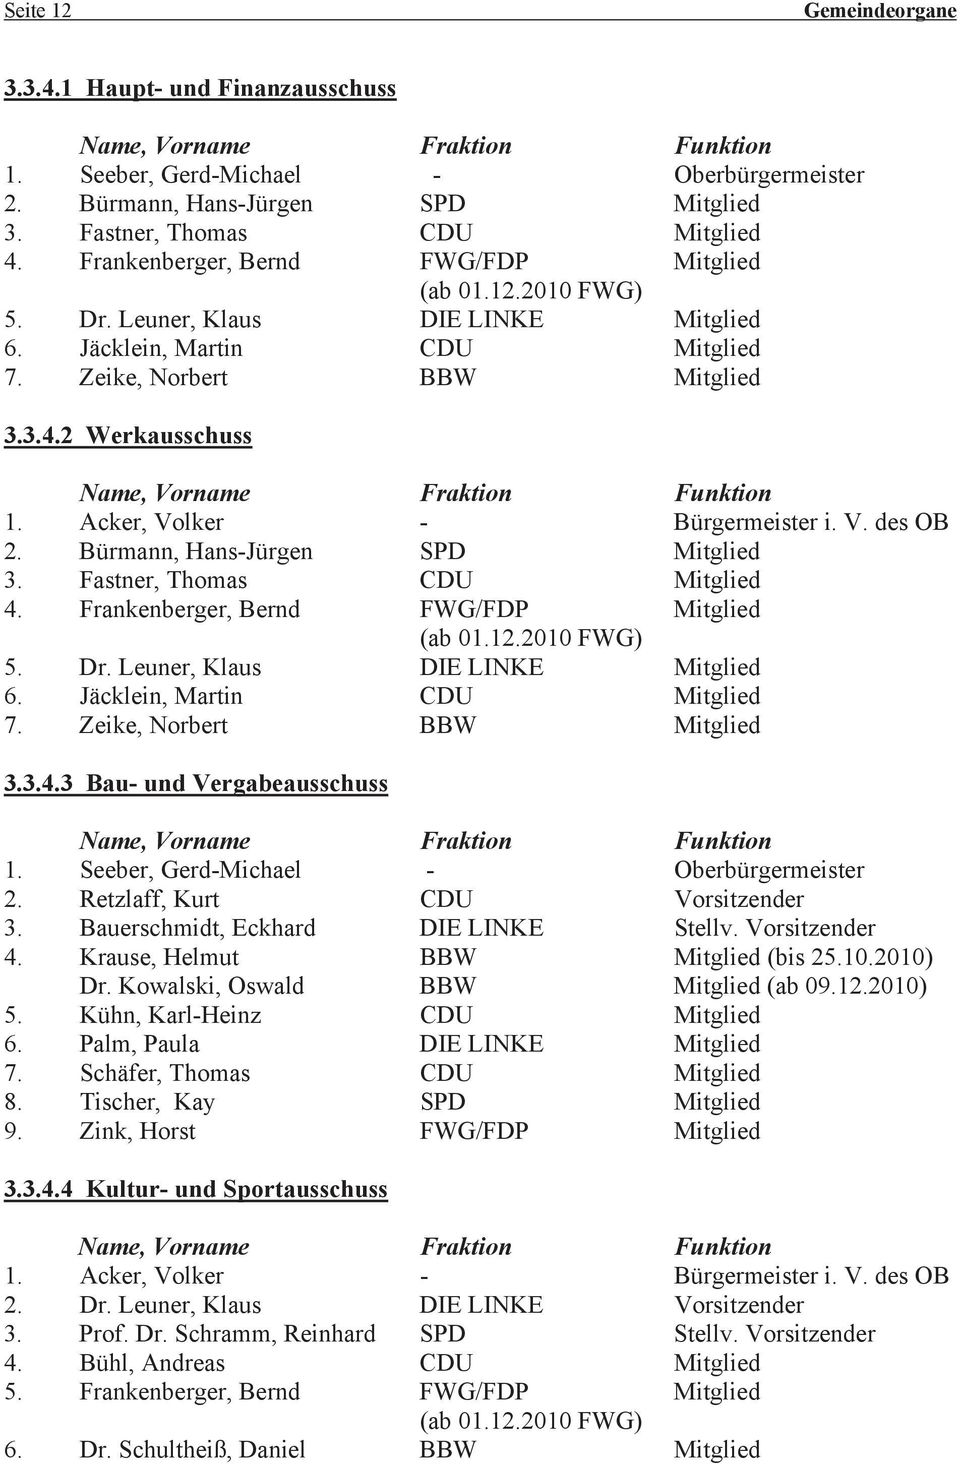 Acker, Volker - Bürgermeister i. V. des OB 2. Bürmann, Hans-Jürgen SPD Mitglied 3. Fastner, Thomas CDU Mitglied 4. Frankenberger, Bernd FWG/FDP Mitglied (ab 01.12.2010 FWG) 5. Dr.